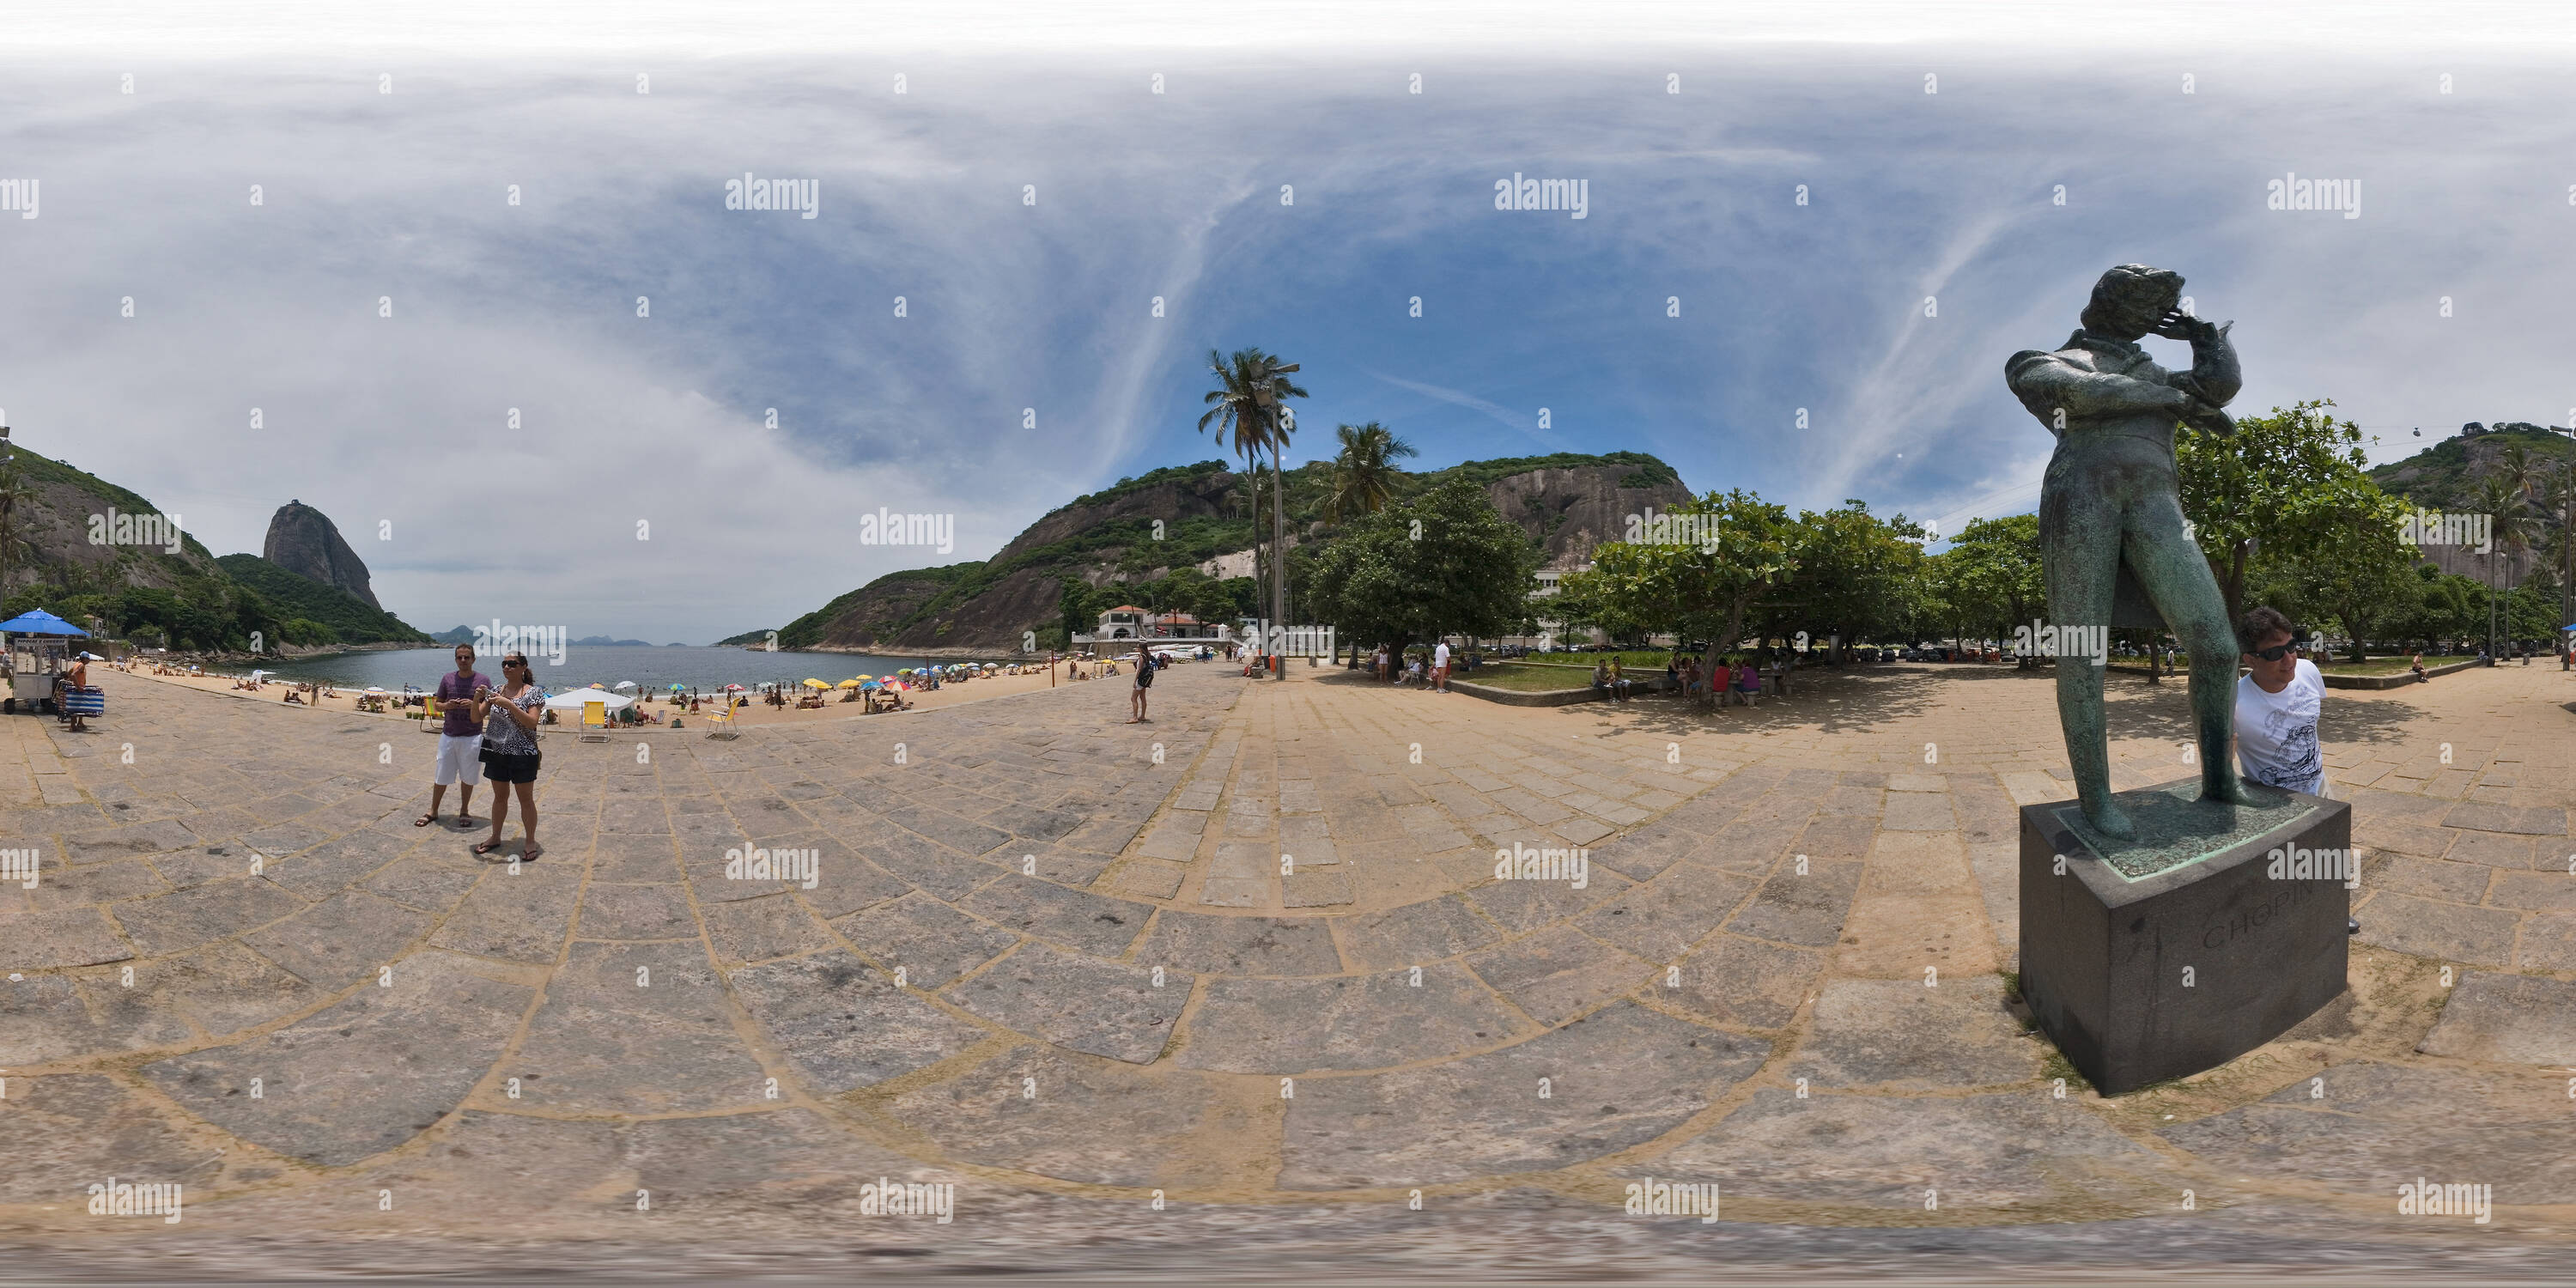 360 degree panoramic view of Praia Vermelha / Pão de Açucar